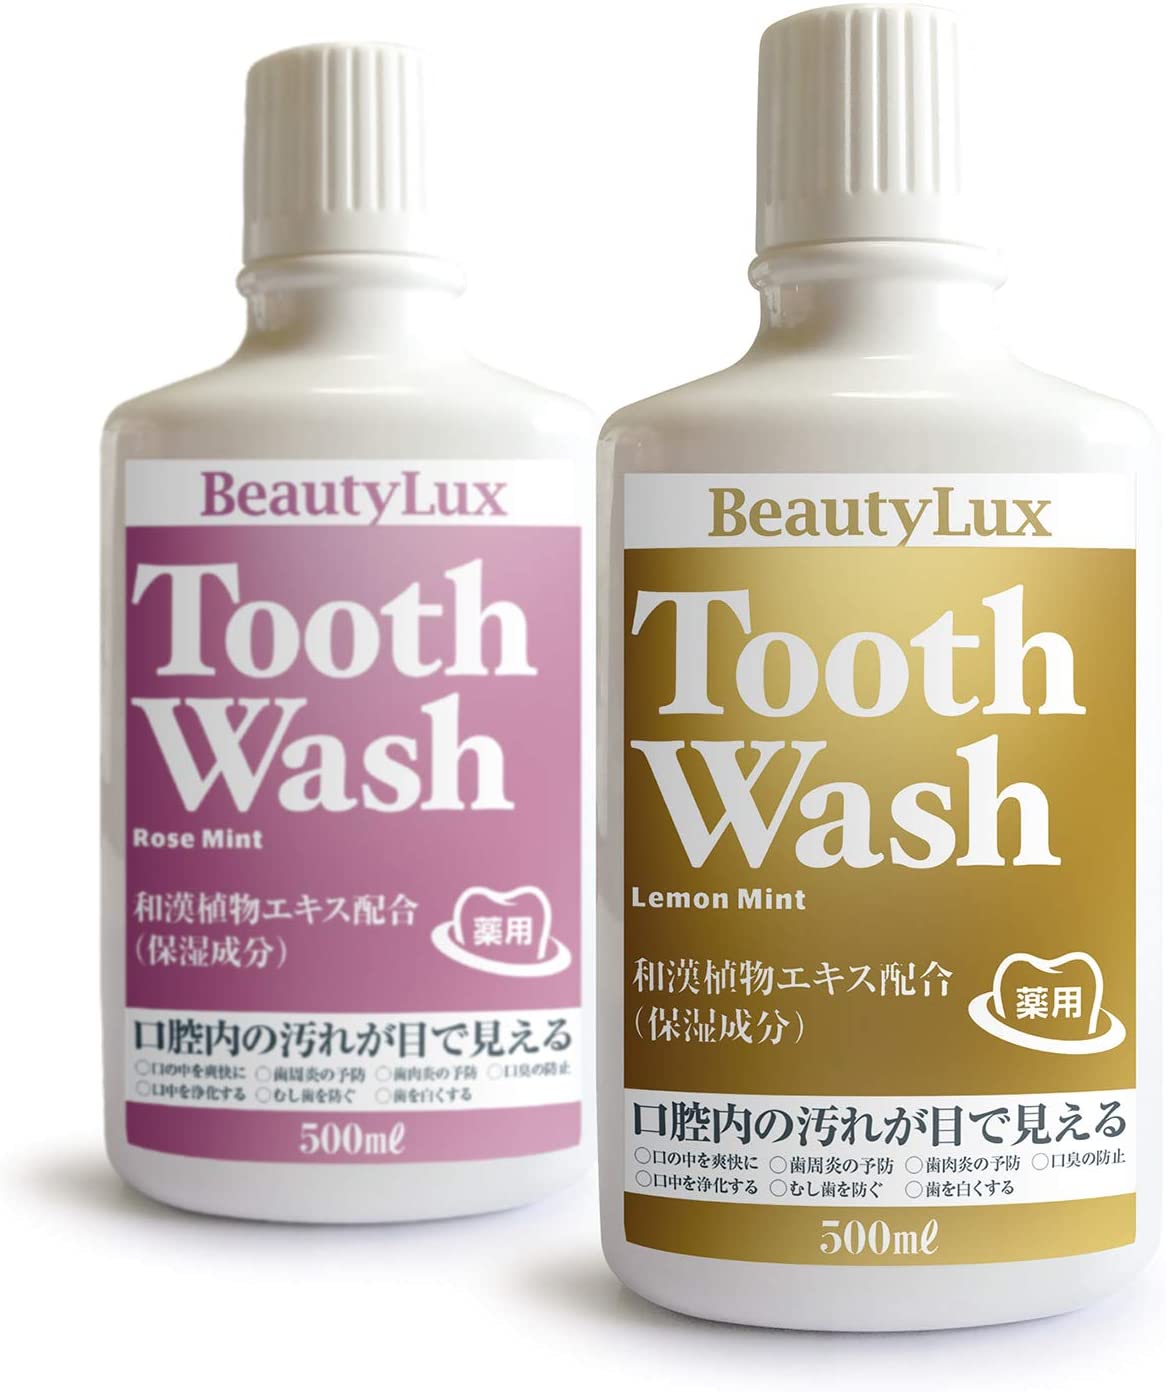 医薬部外品 BeautyLux Tooth Wash（トォースウォッシュ） 500ml レモンミント/ローズミント お口をマルチケアで健やかな状態へリメイク、古代から知られている天然由来の和漢植物エキス配合した「マウスウォッシュ」367698